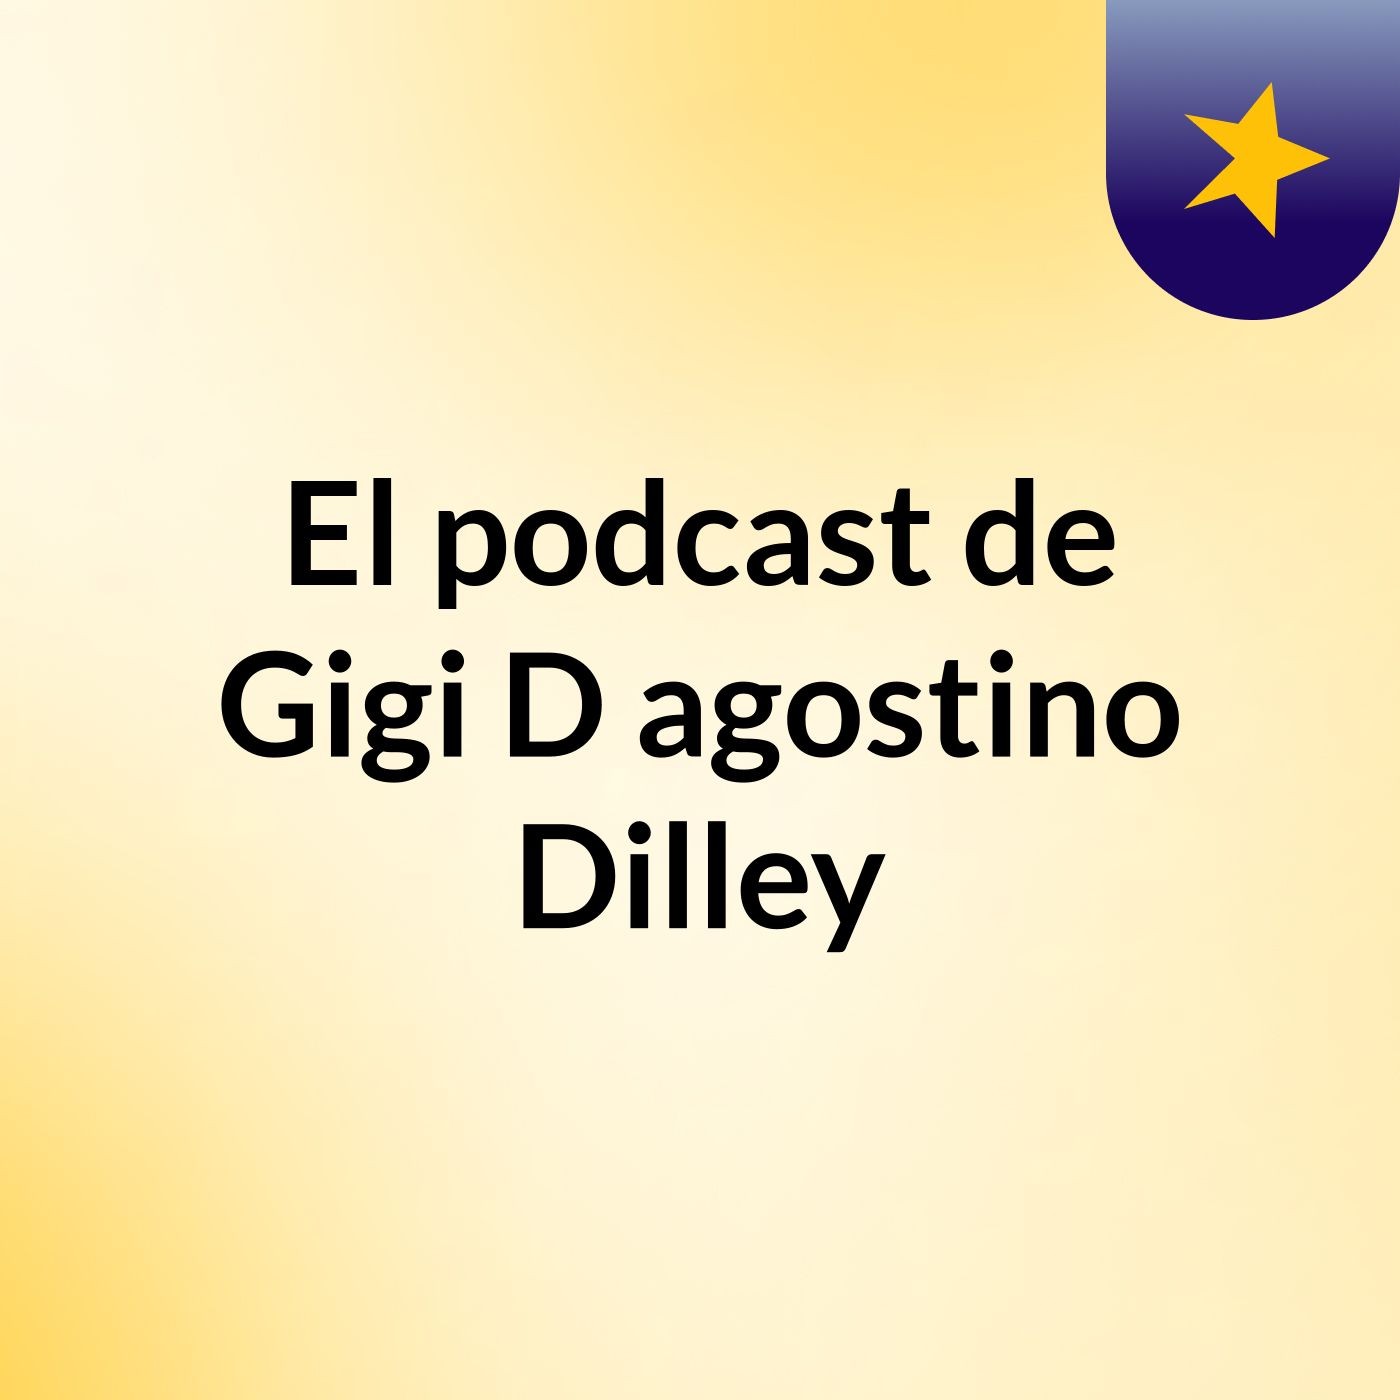 El podcast de Gigi D, agostino Dilley